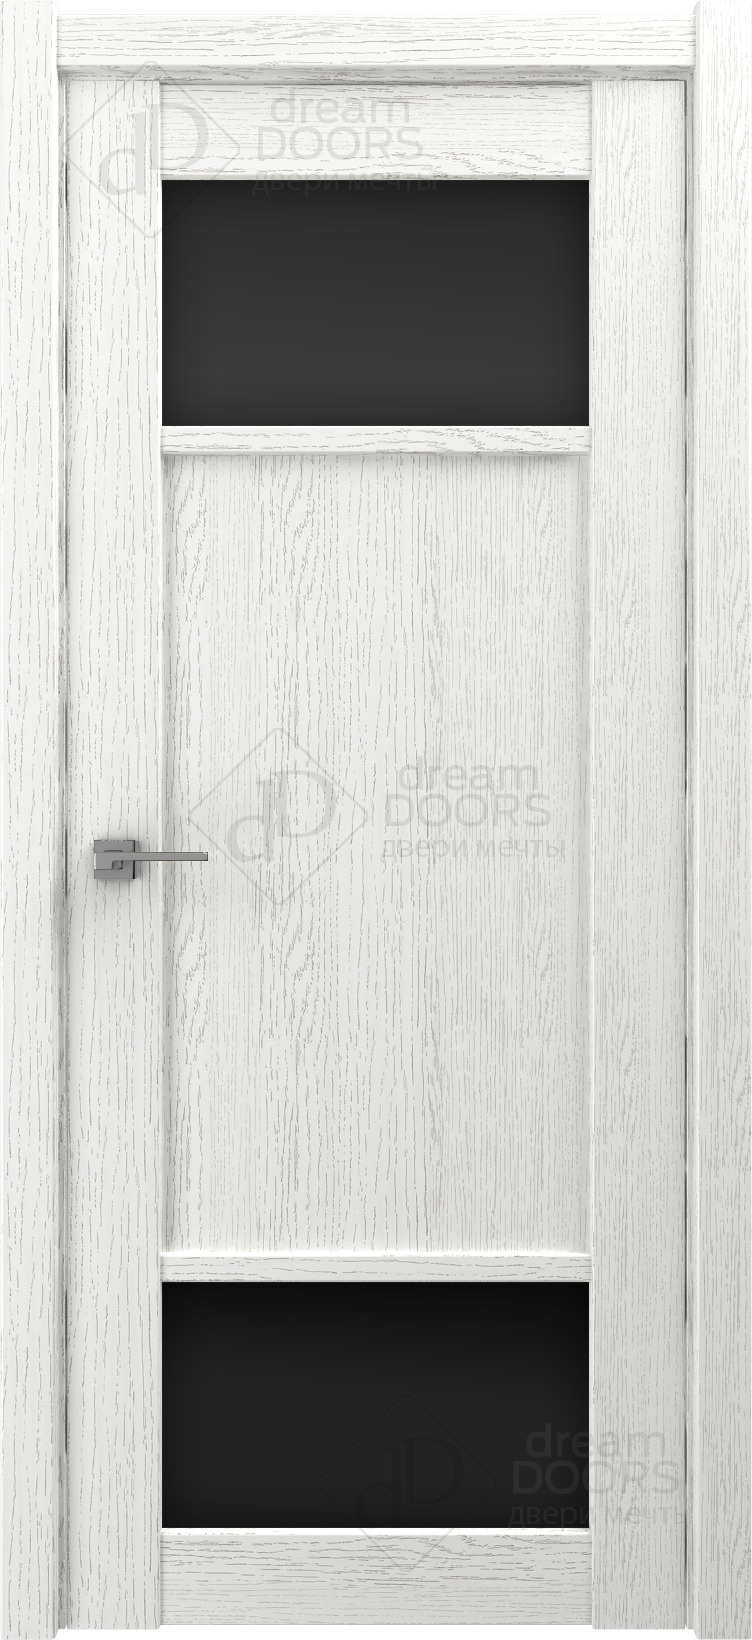 Dream Doors Межкомнатная дверь V27, арт. 18244 - фото №2